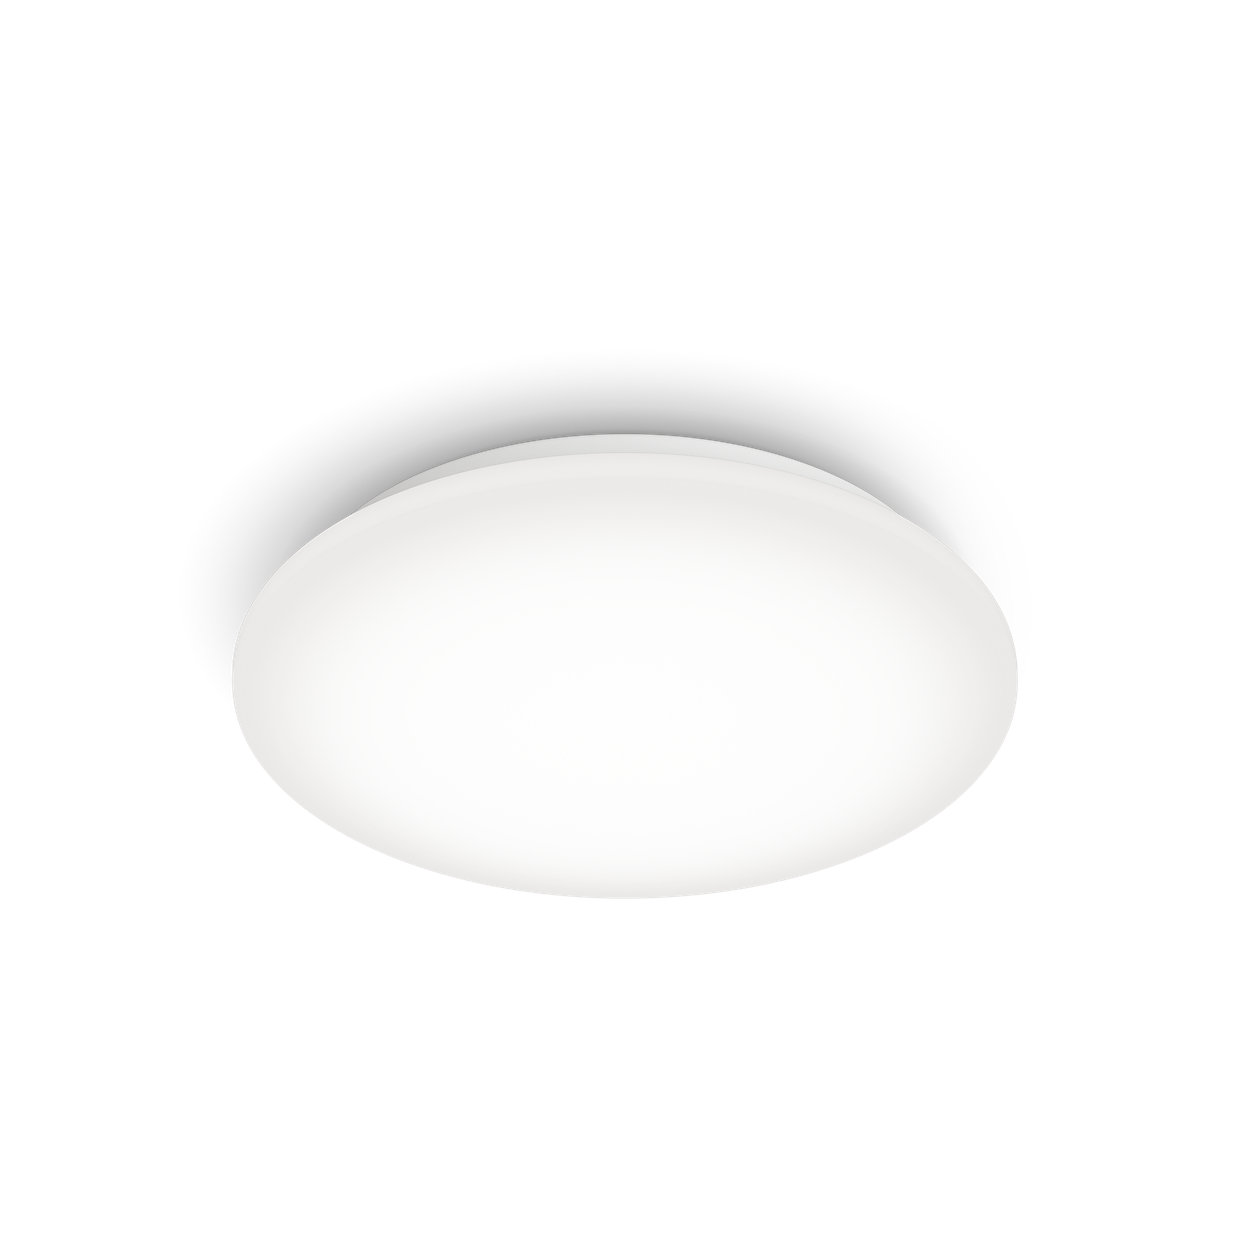 Ugodno LED svjetlo koje je blago za vaše oči